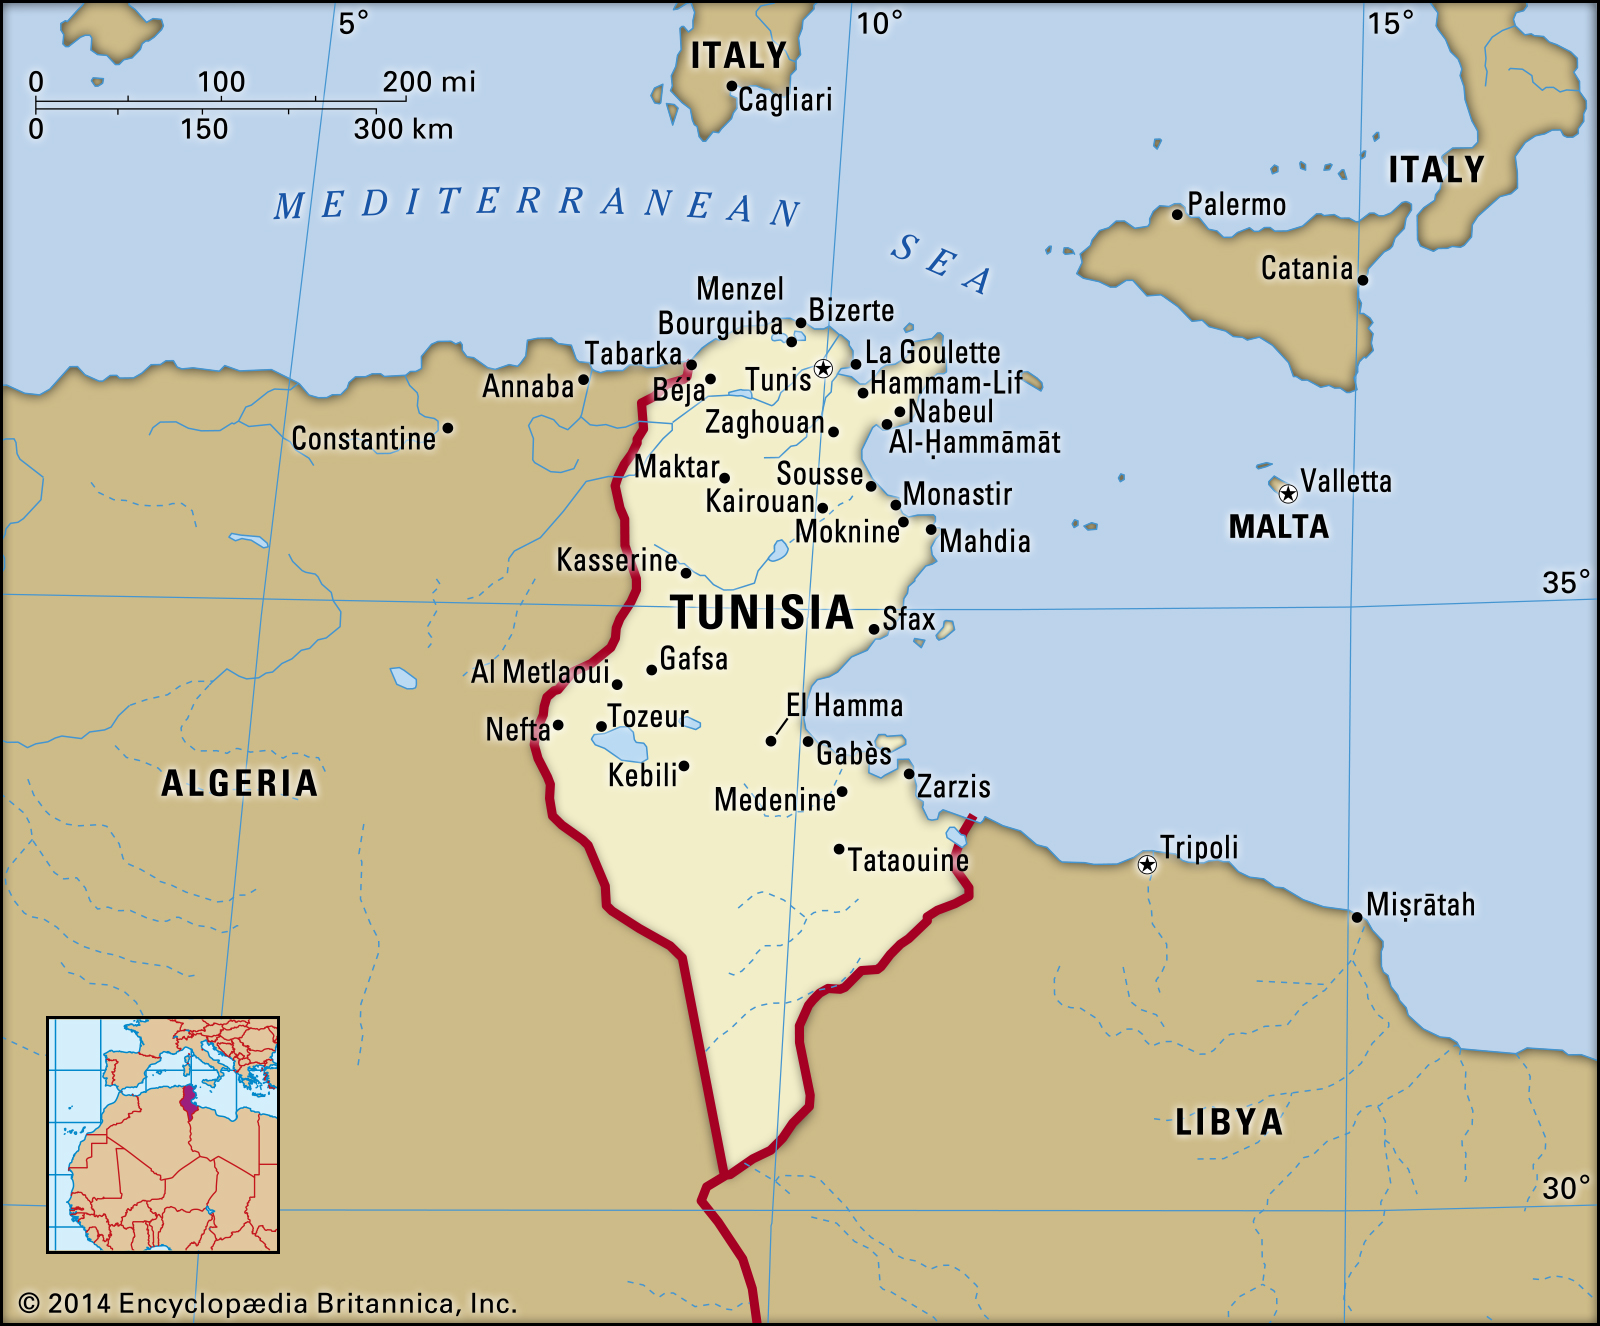 Femeie tunisiana cauta algeriana)